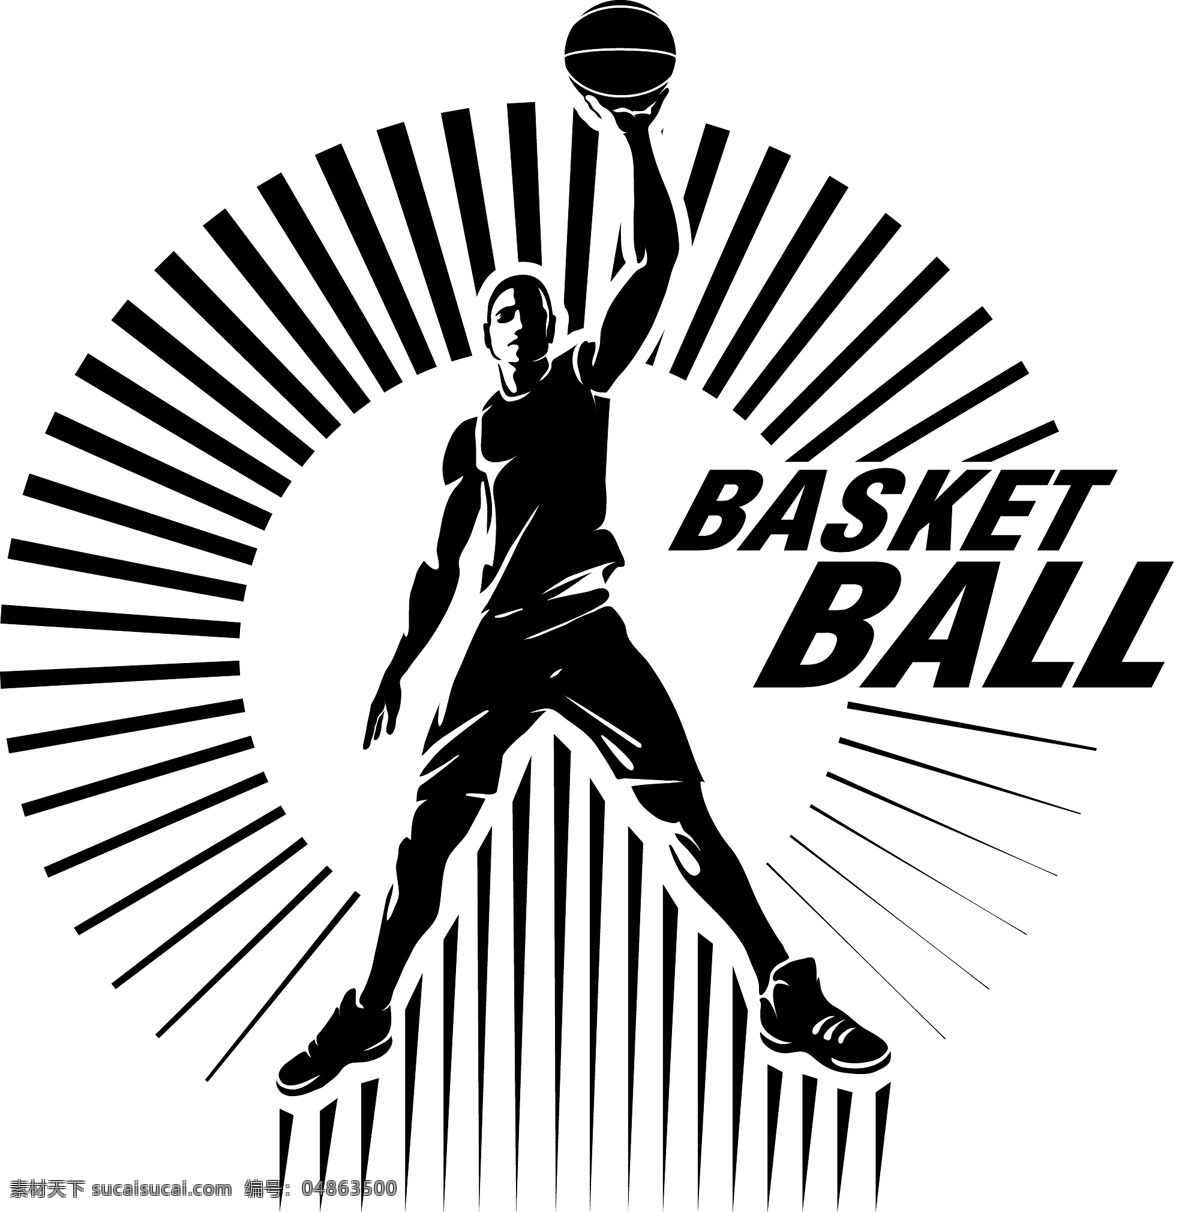 篮球运动员 篮球 手绘篮球 人物剪影 轮廓 cba 篮球运动 nba 球篮 basketball 体育运动 矢量 人物图库 职业人物